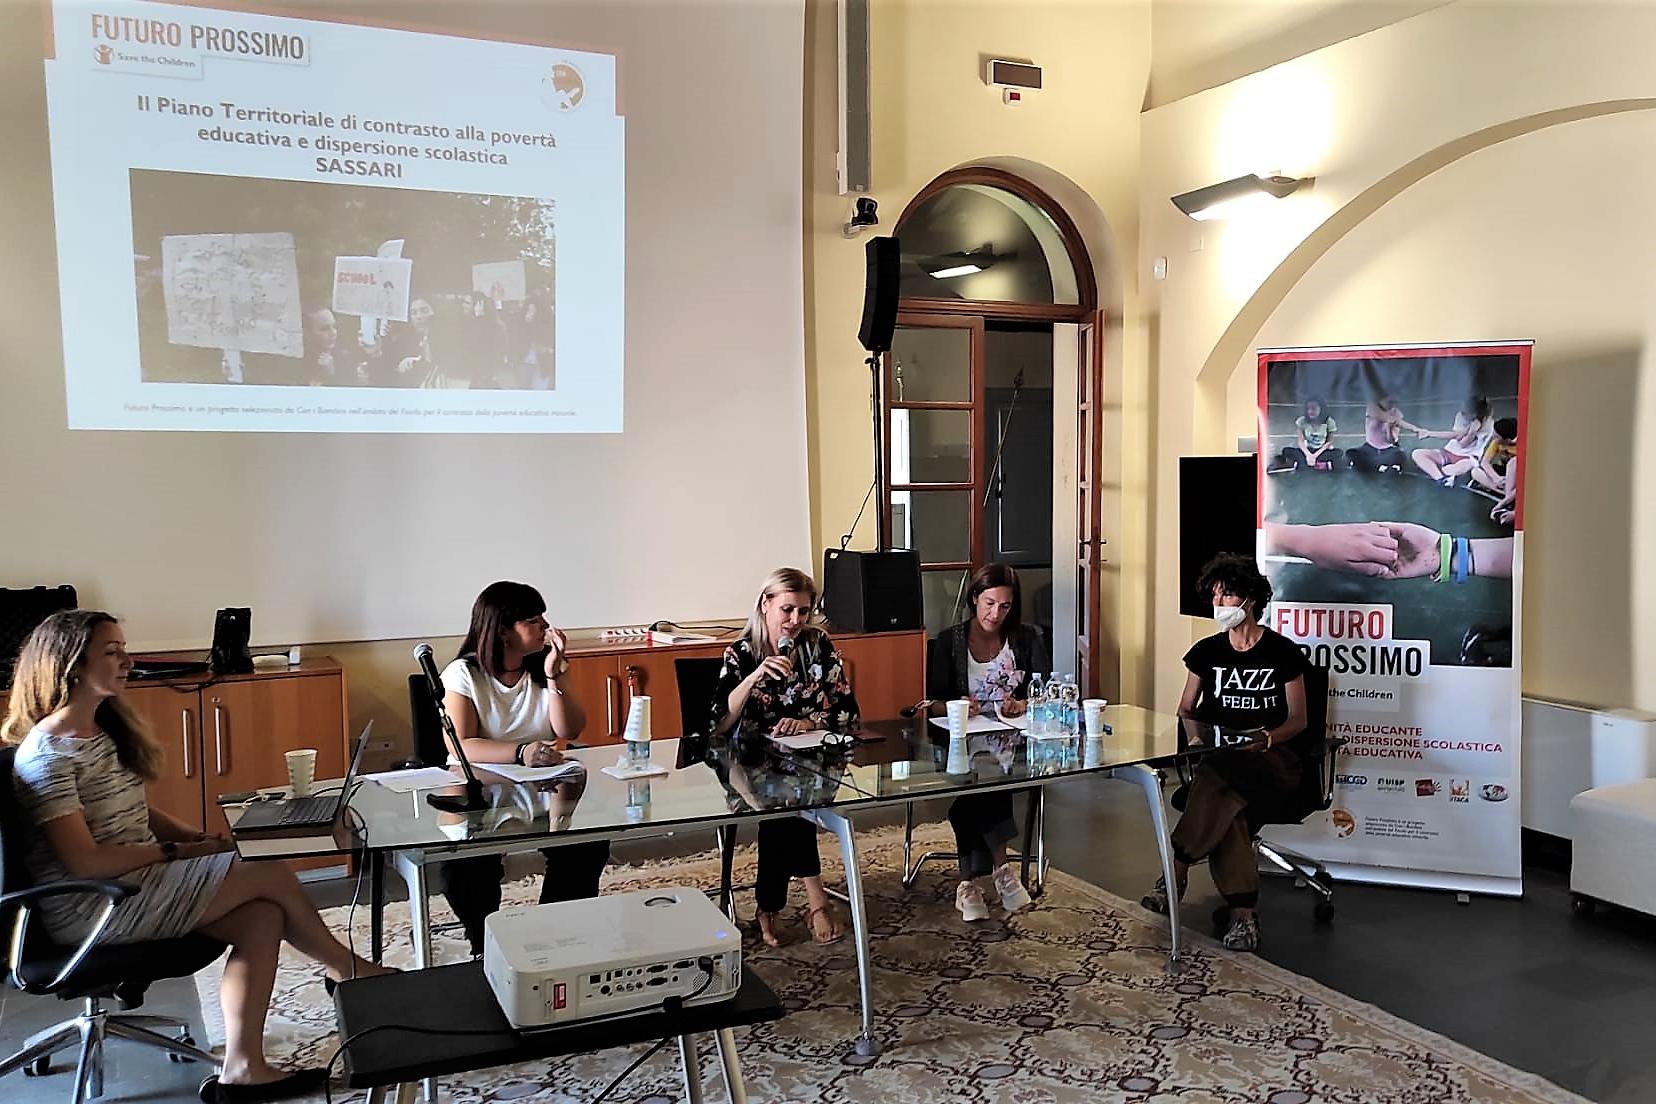 Povertà educative e dispersione scolastica: Sassari fra le tre città italiane scelte da Save the Children